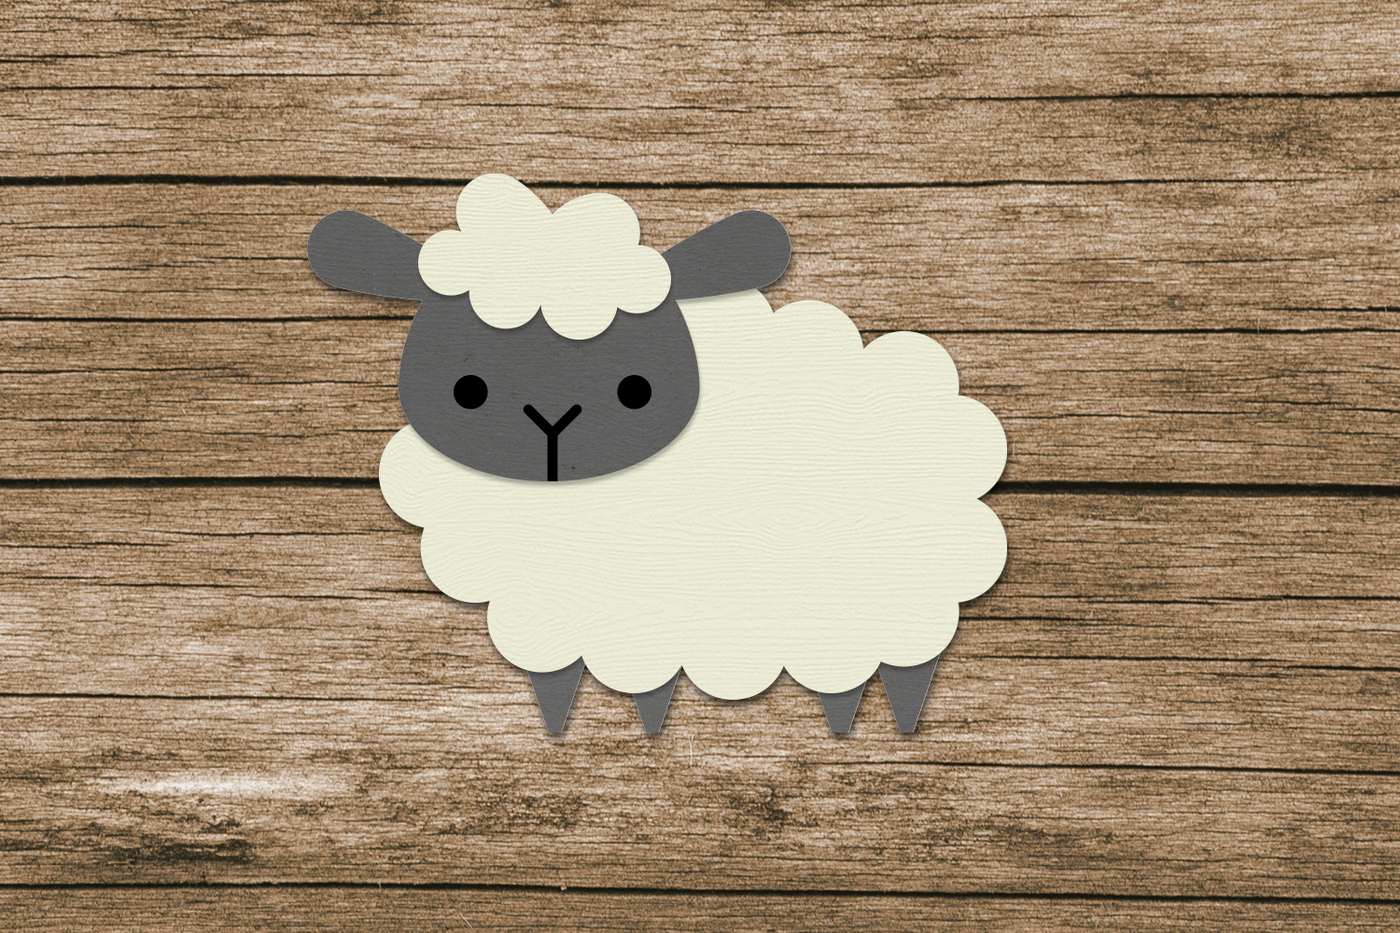 Cute paper sheep.